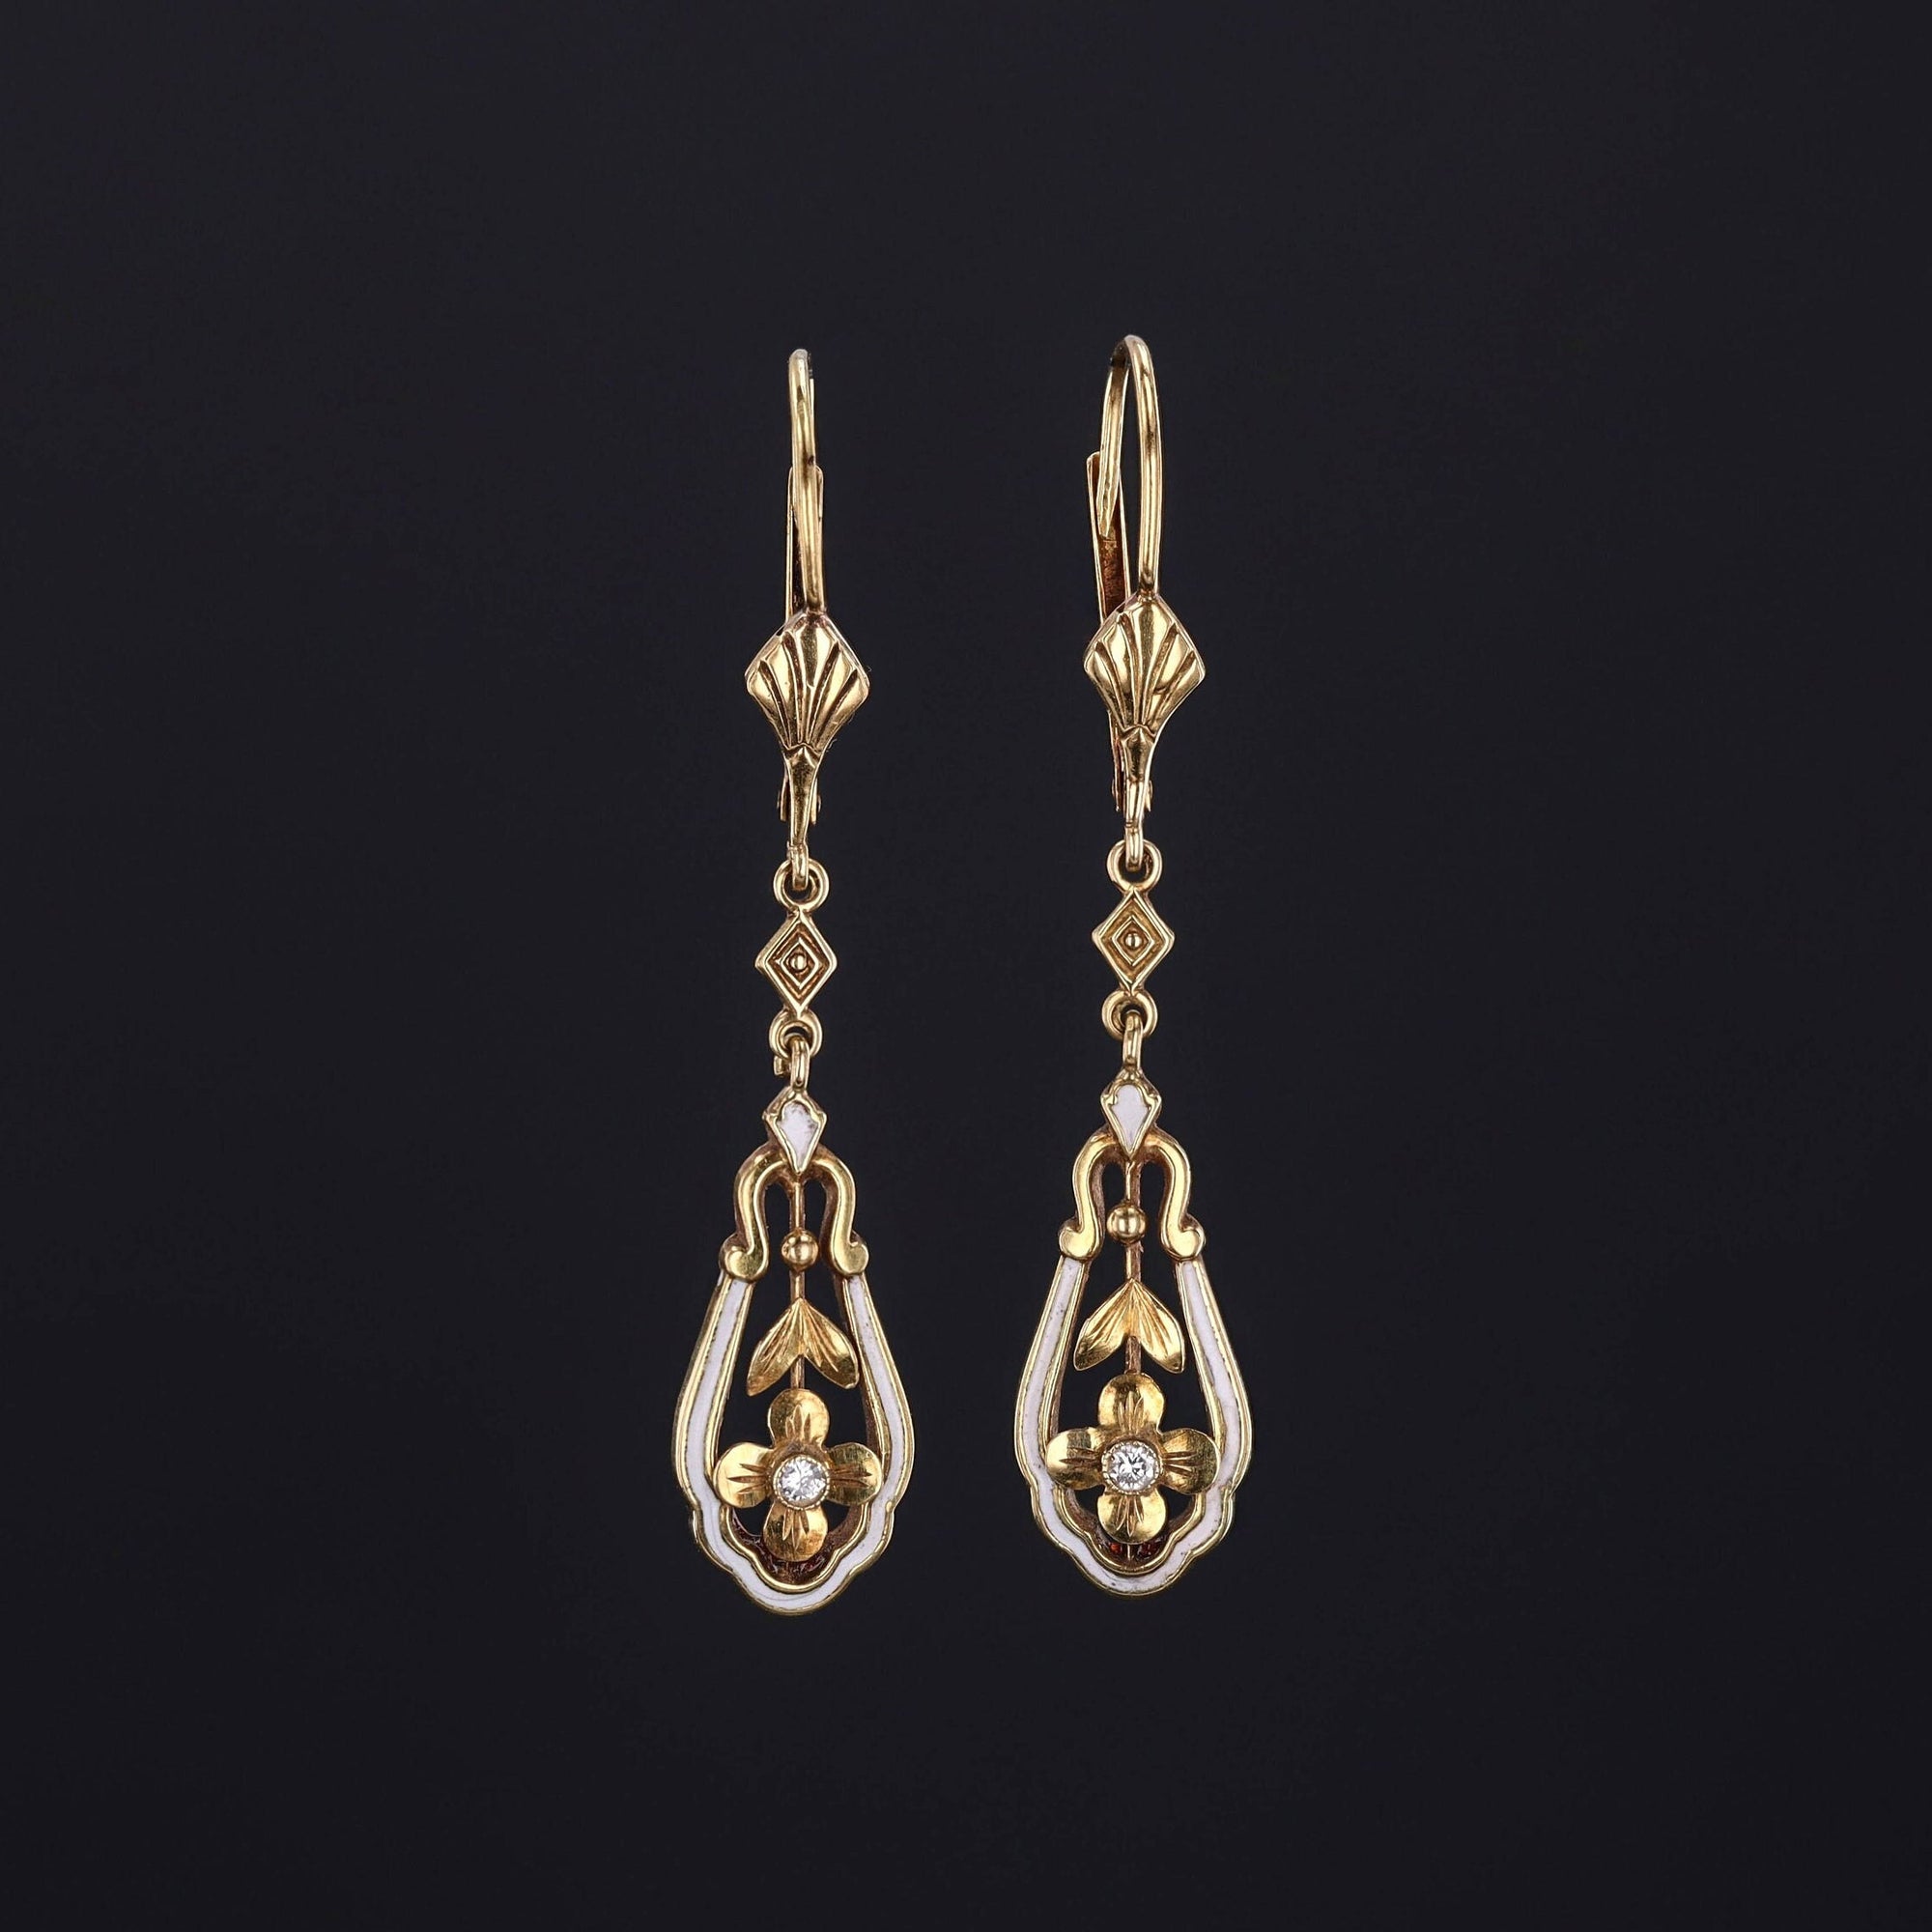 Antique Enamel & Diamond Earrings | Floral Earrings 